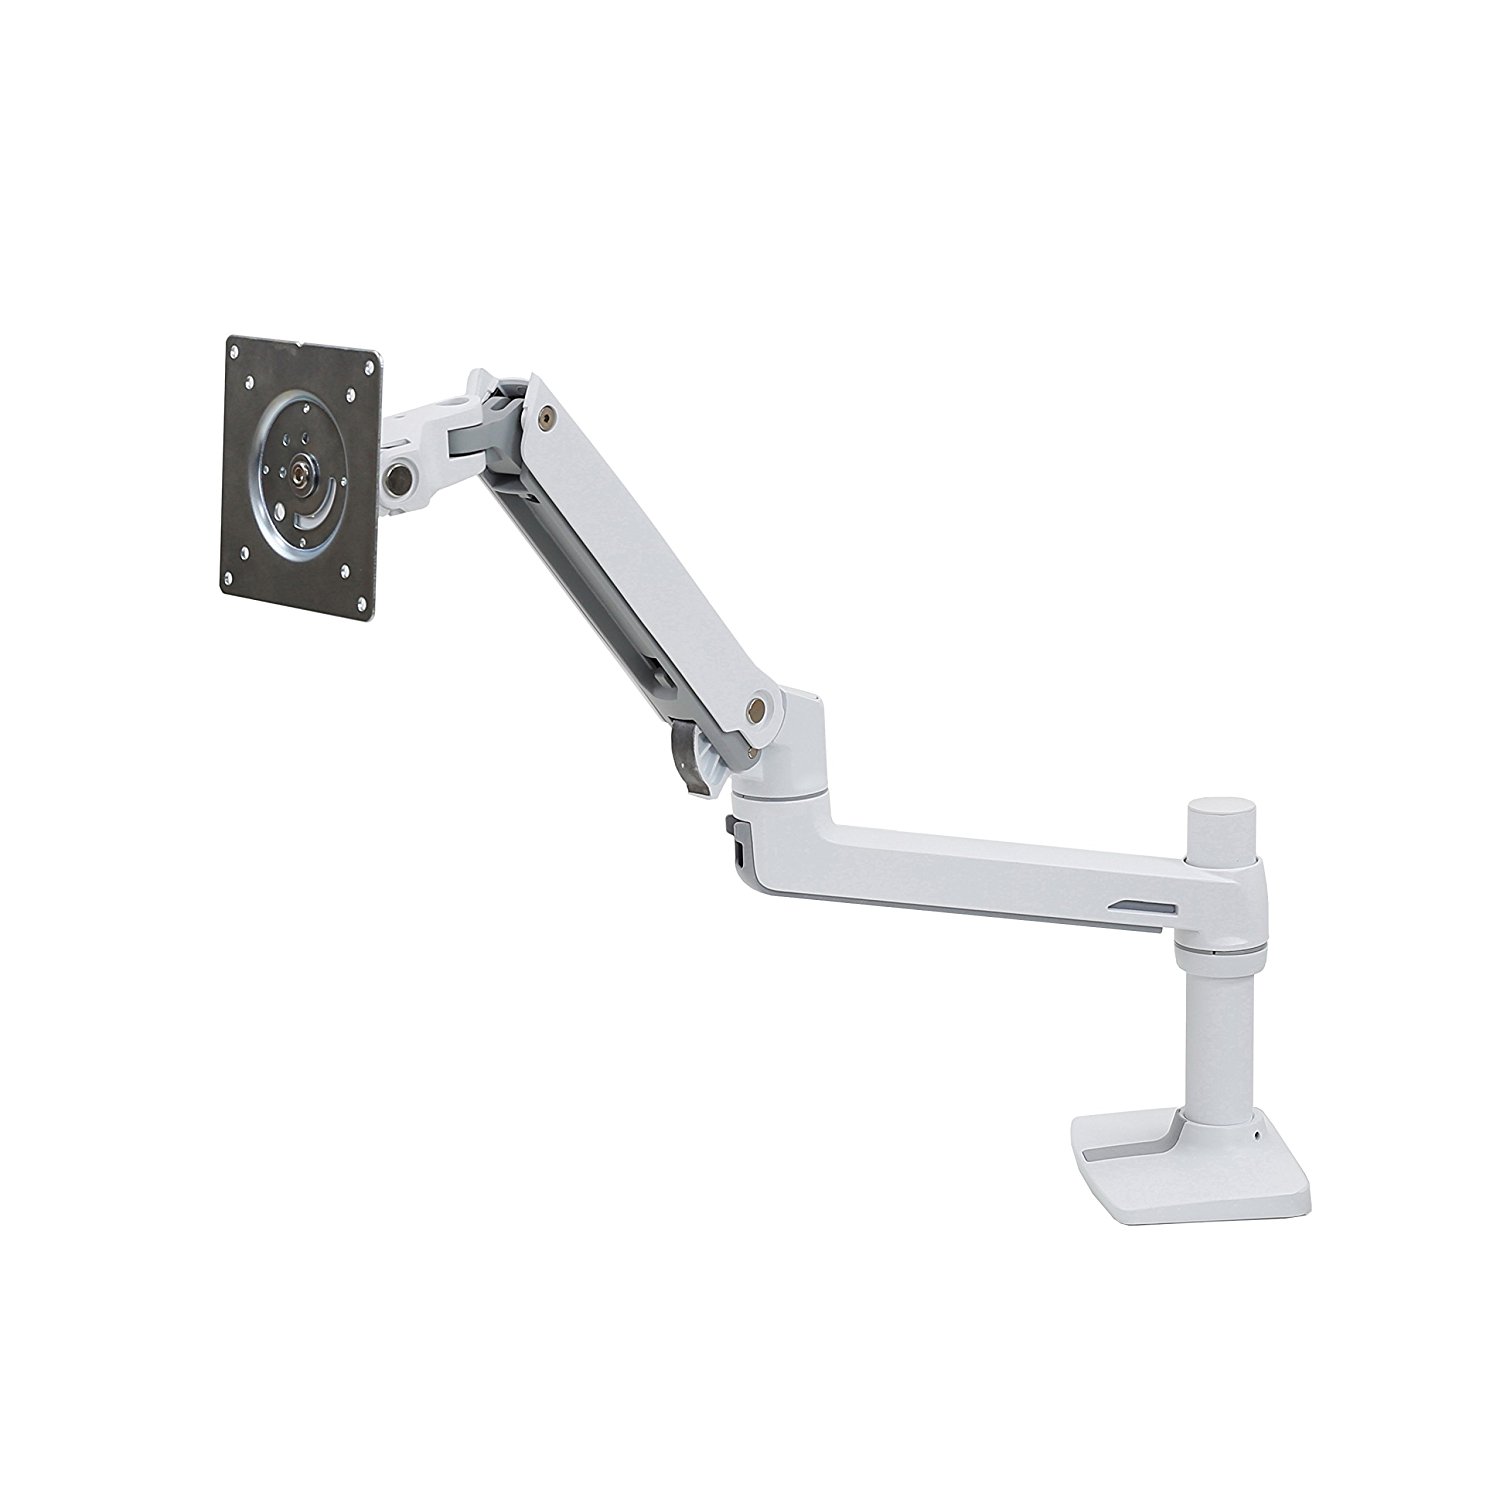 45-490-216 LX - Kit de montaje (brazo articulado, soporte de sujeción de escritorio extencion bracket) - blanco